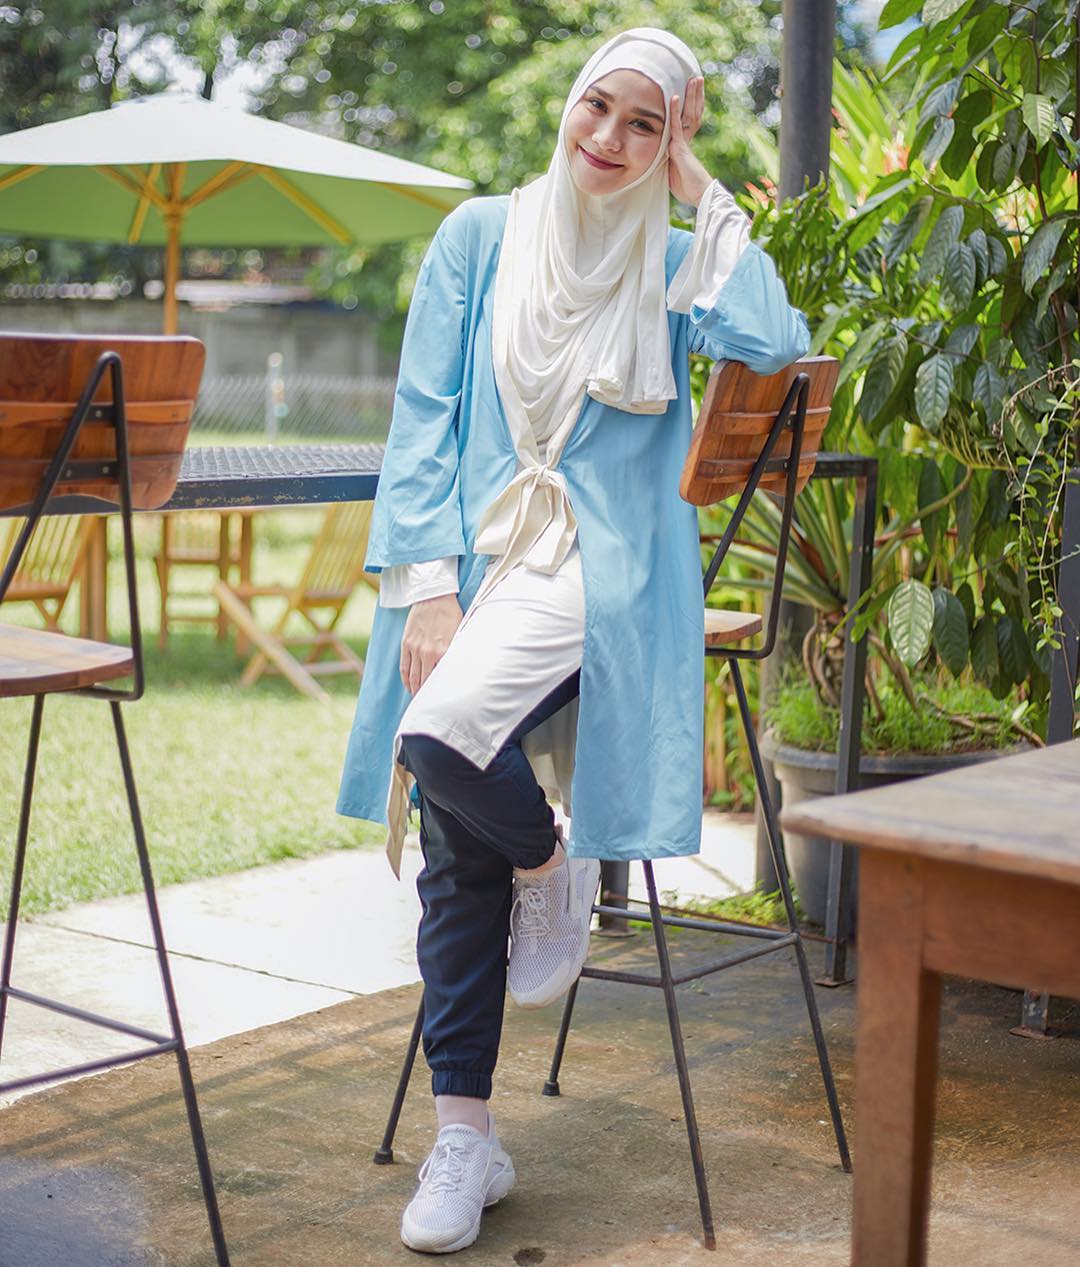 32 HijabModel 2019 Paling Top